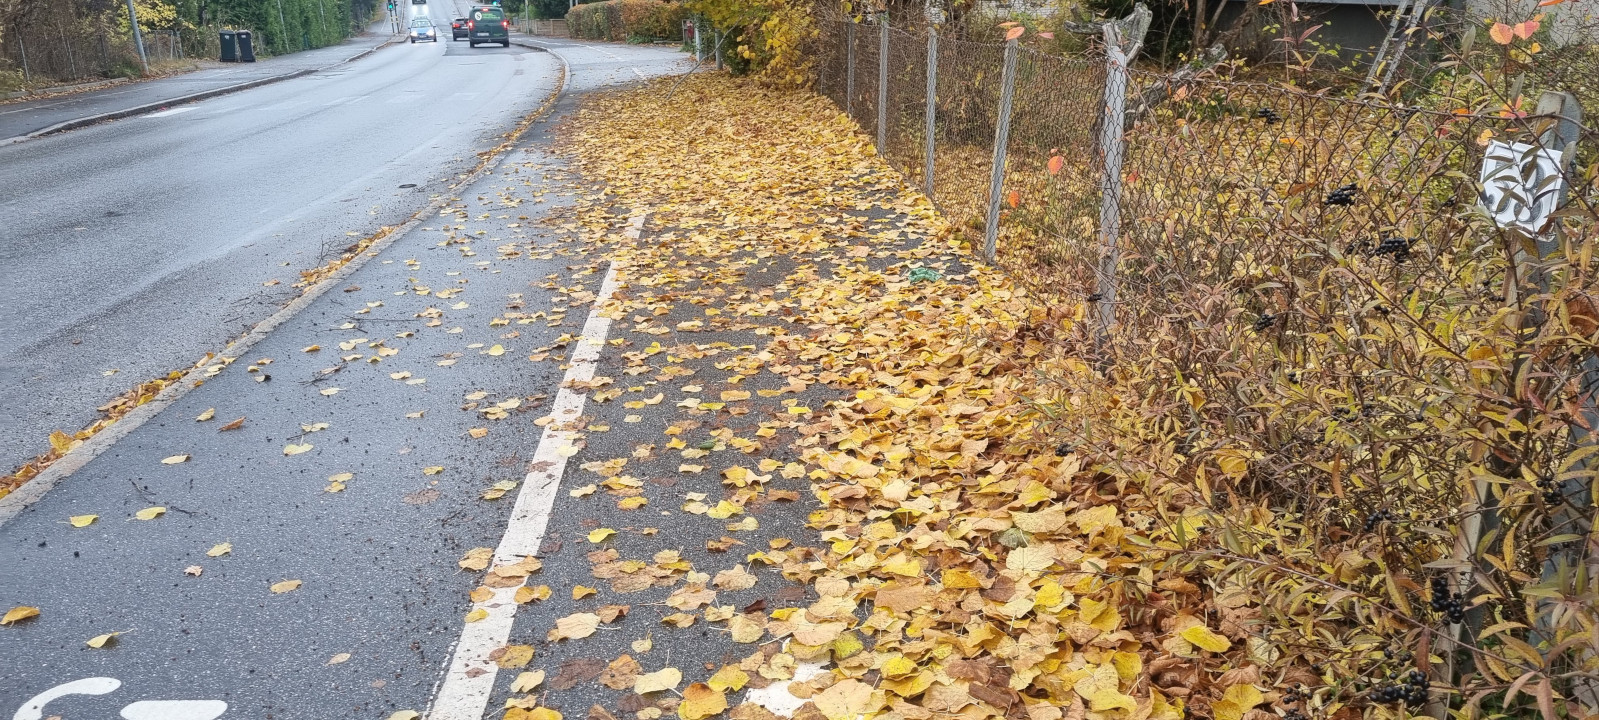 Caminho de bicicleta com algumas folhas no chão.